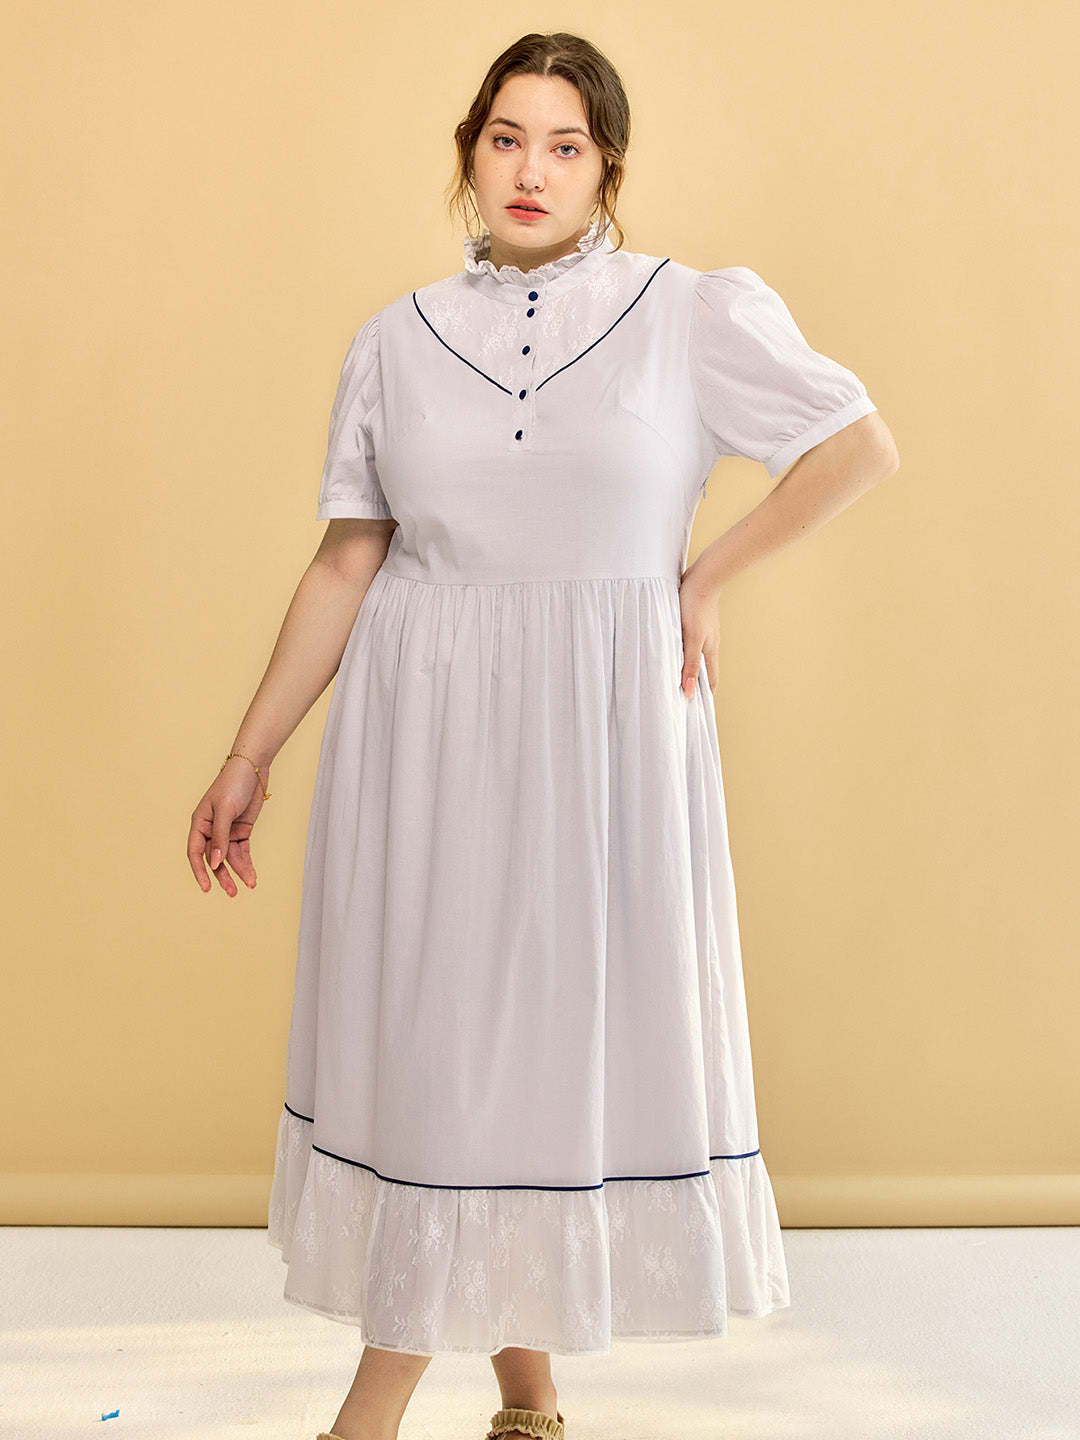 【Final Sale】Plus Size Alva Retro Lace Blue Dress